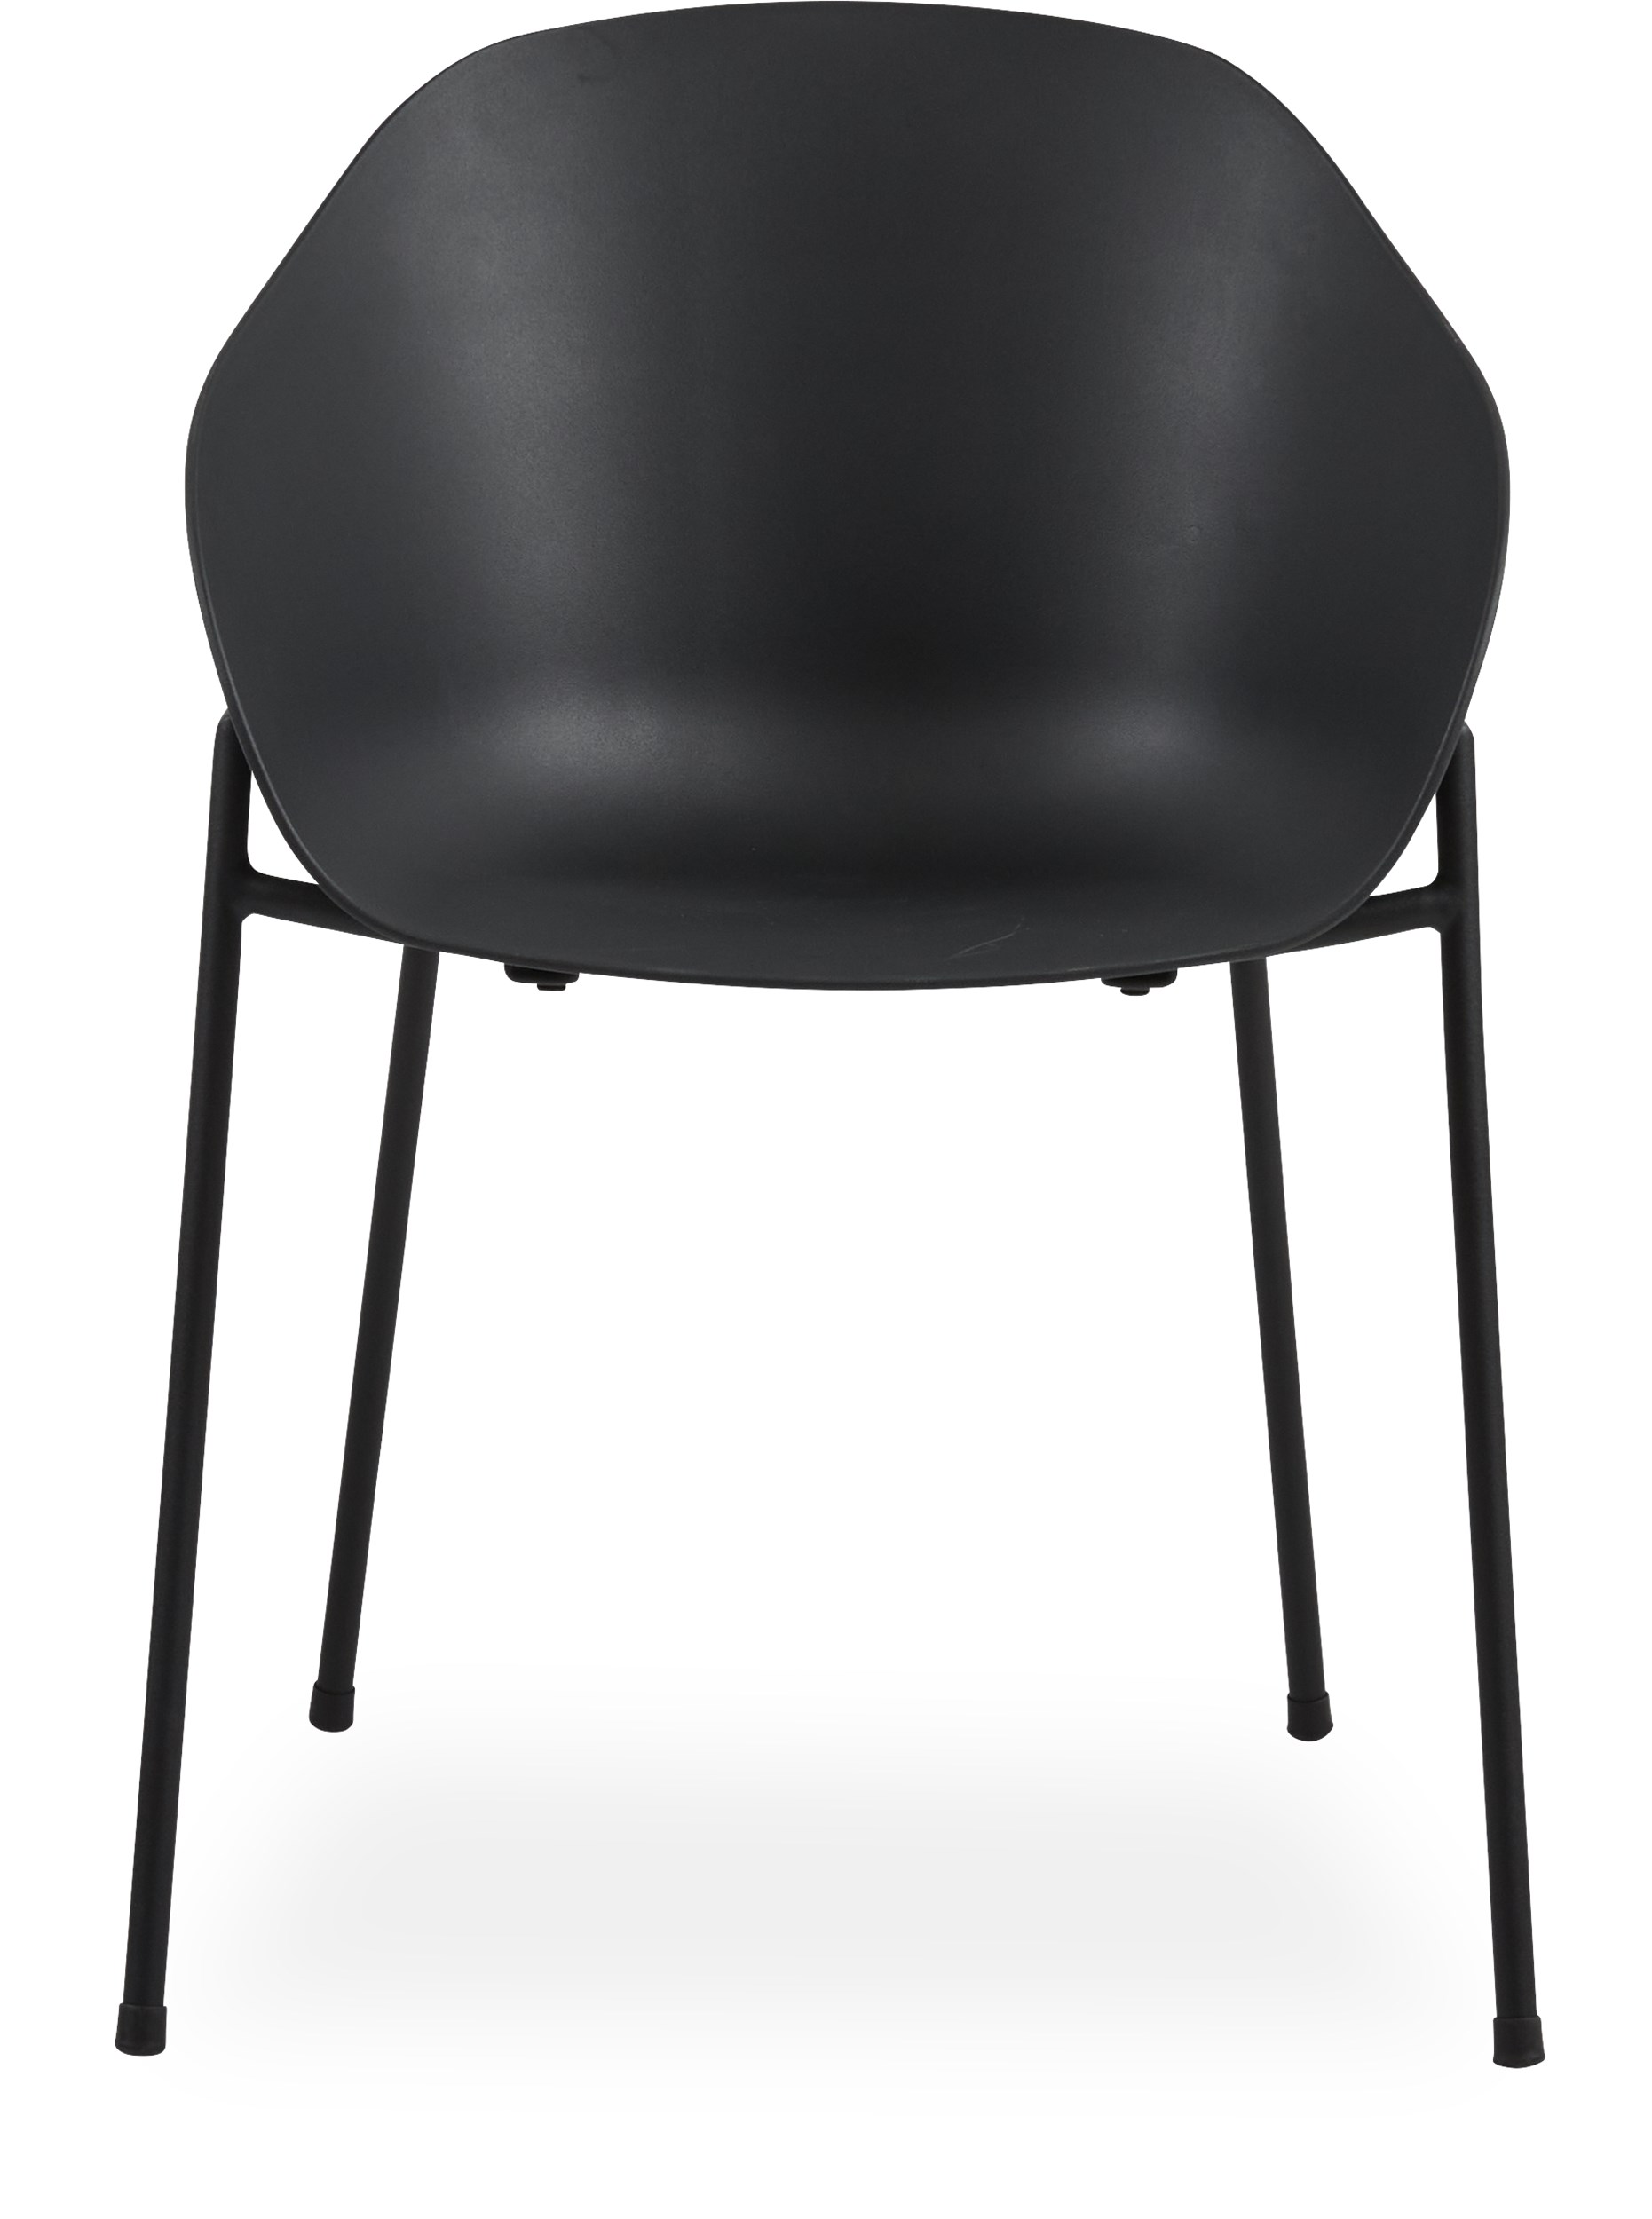 Damio Trädgårdsstol - Skal i svart plast och stomme i svart pulverlackerad metall